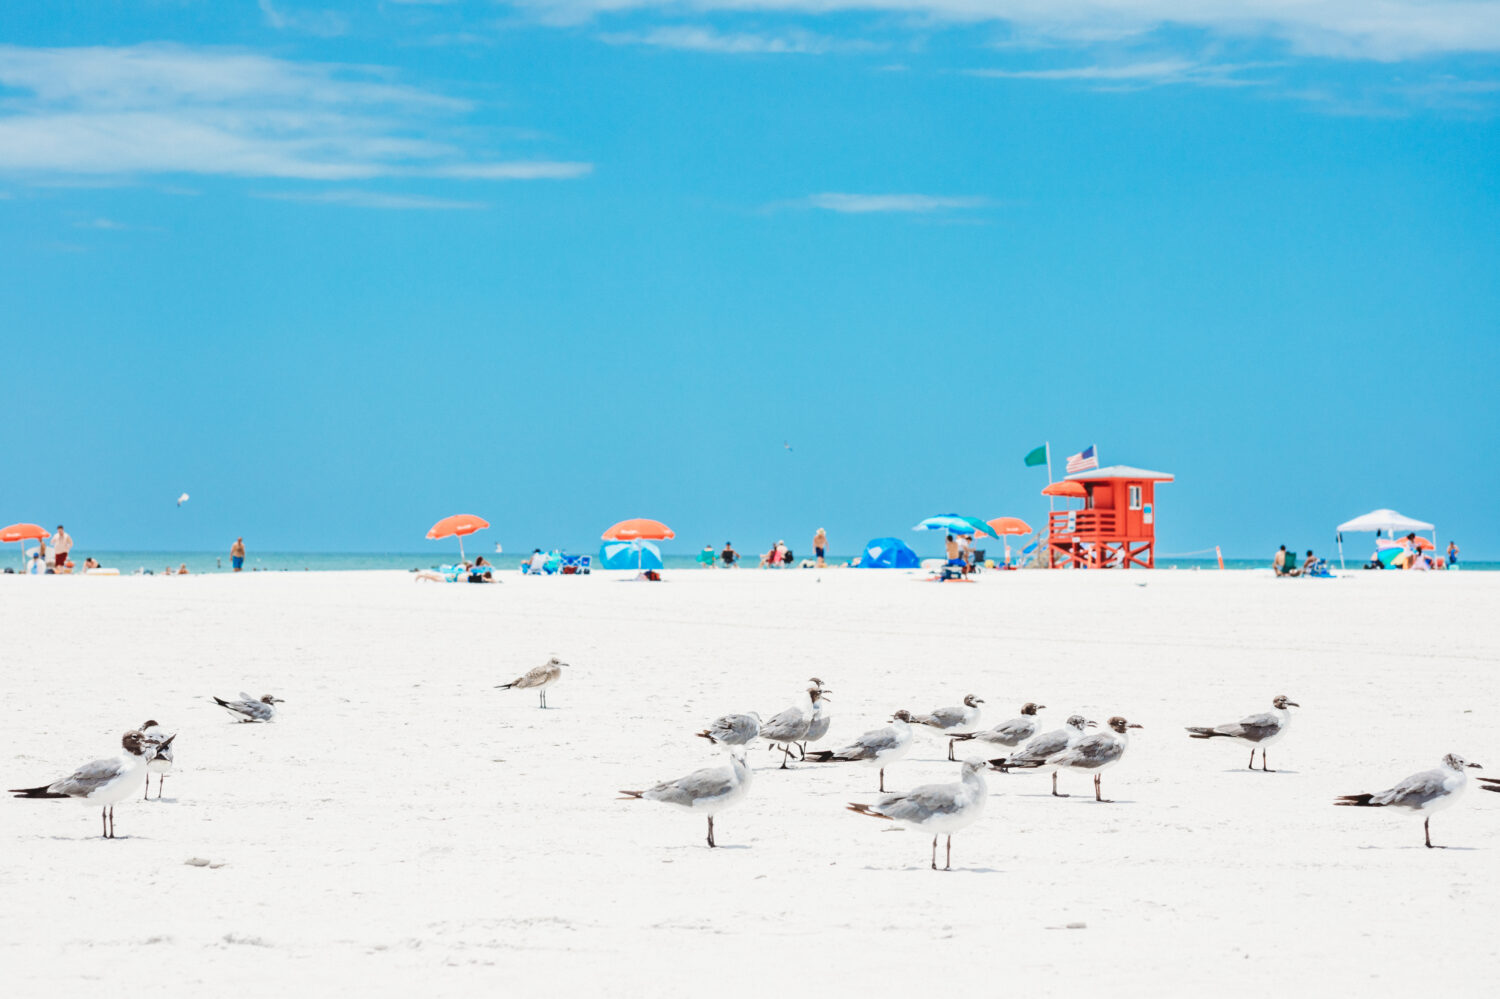 Spiaggia di Siesta Key a Sarasota in Florida.  La spiaggia numero 1 negli Stati Uniti.  Capanna di legno rossa del bagnino e gabbiani volanti su una spiaggia vuota di mattina.  Le dieci migliori spiagge degli Stati Uniti con sabbia bianca.